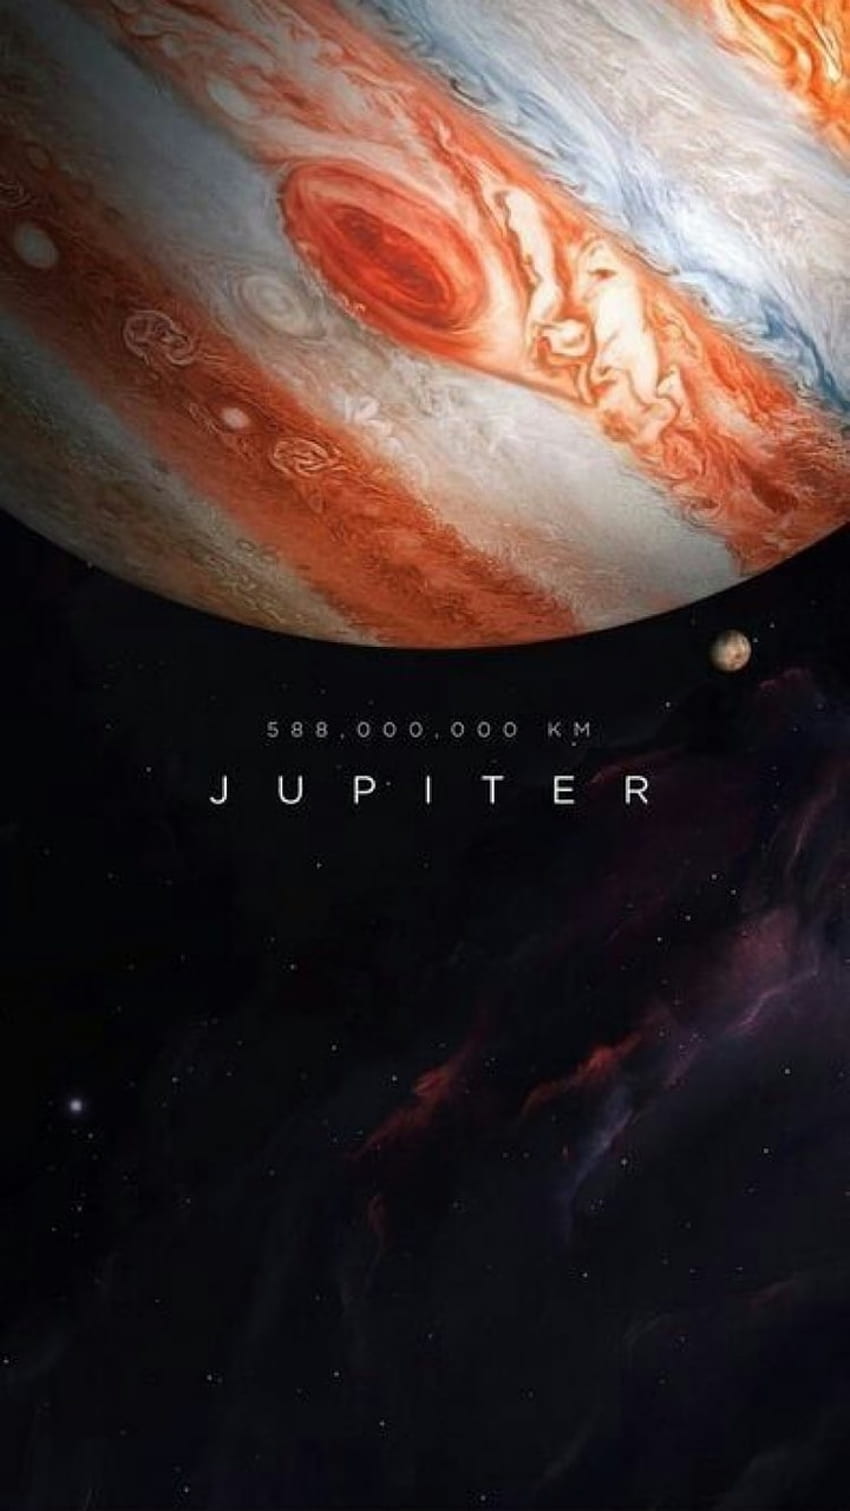 júpiter, planeta y espacio -, Sleeping At Last fondo de pantalla del teléfono